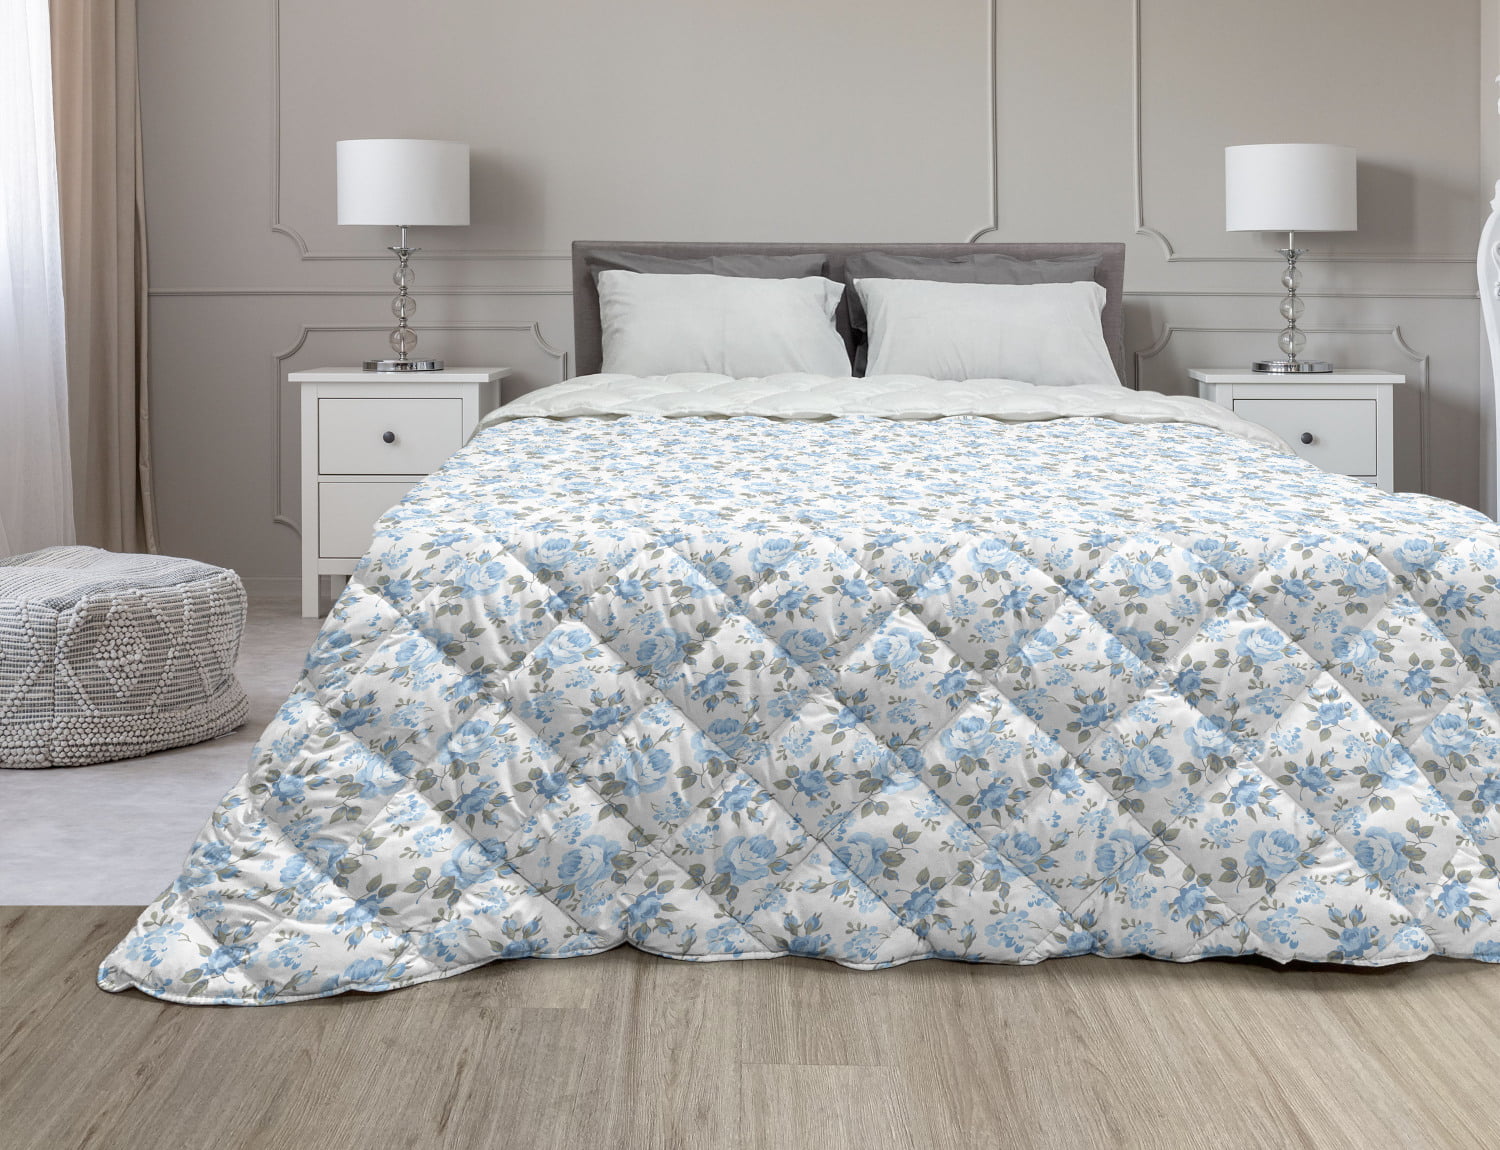 Details about   Garden Quilted Bedspread & Pillow Shams Set Circular Petals Butterfly Print 